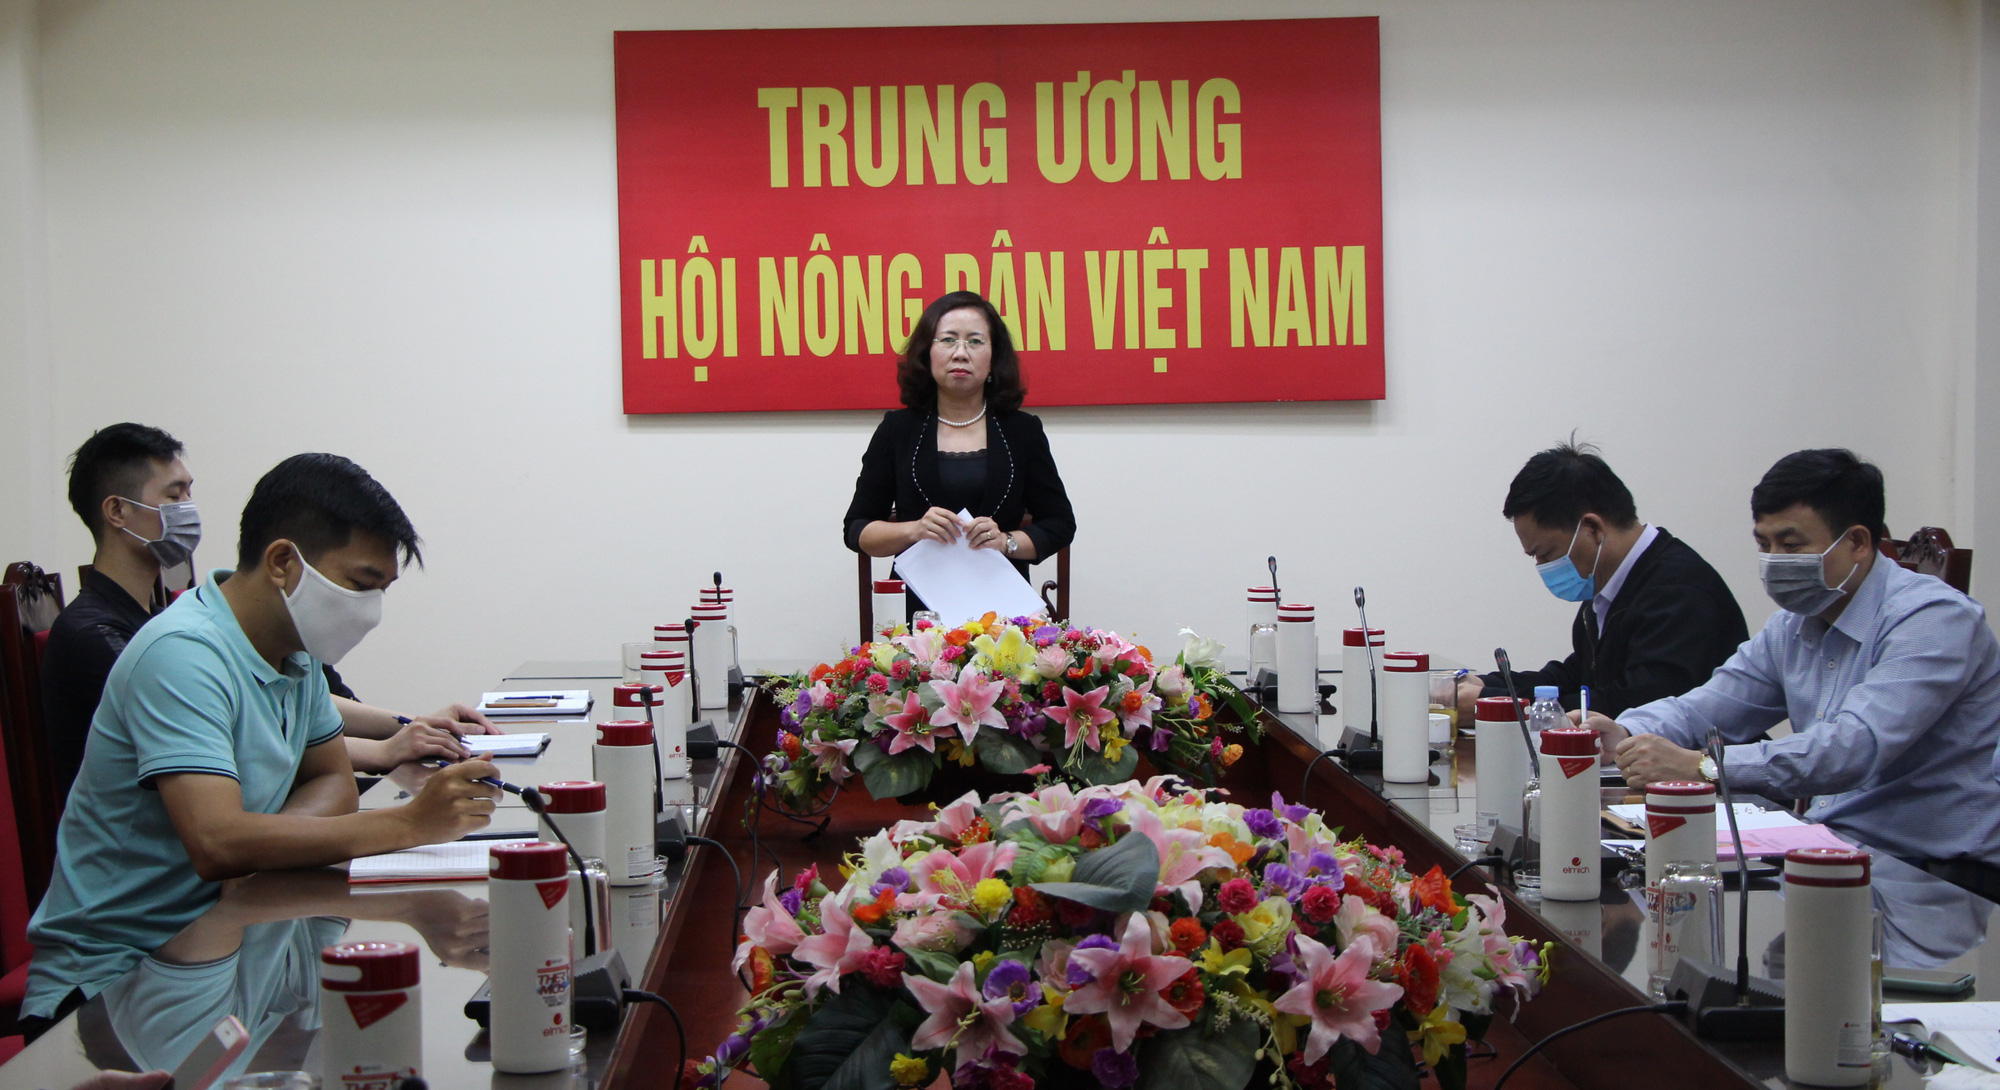 Phó Chủ tịch Trung ương Hội NDVN Bùi Thị Thơm: Xây dựng một thế hệ nông dân mới năng động - Ảnh 1.